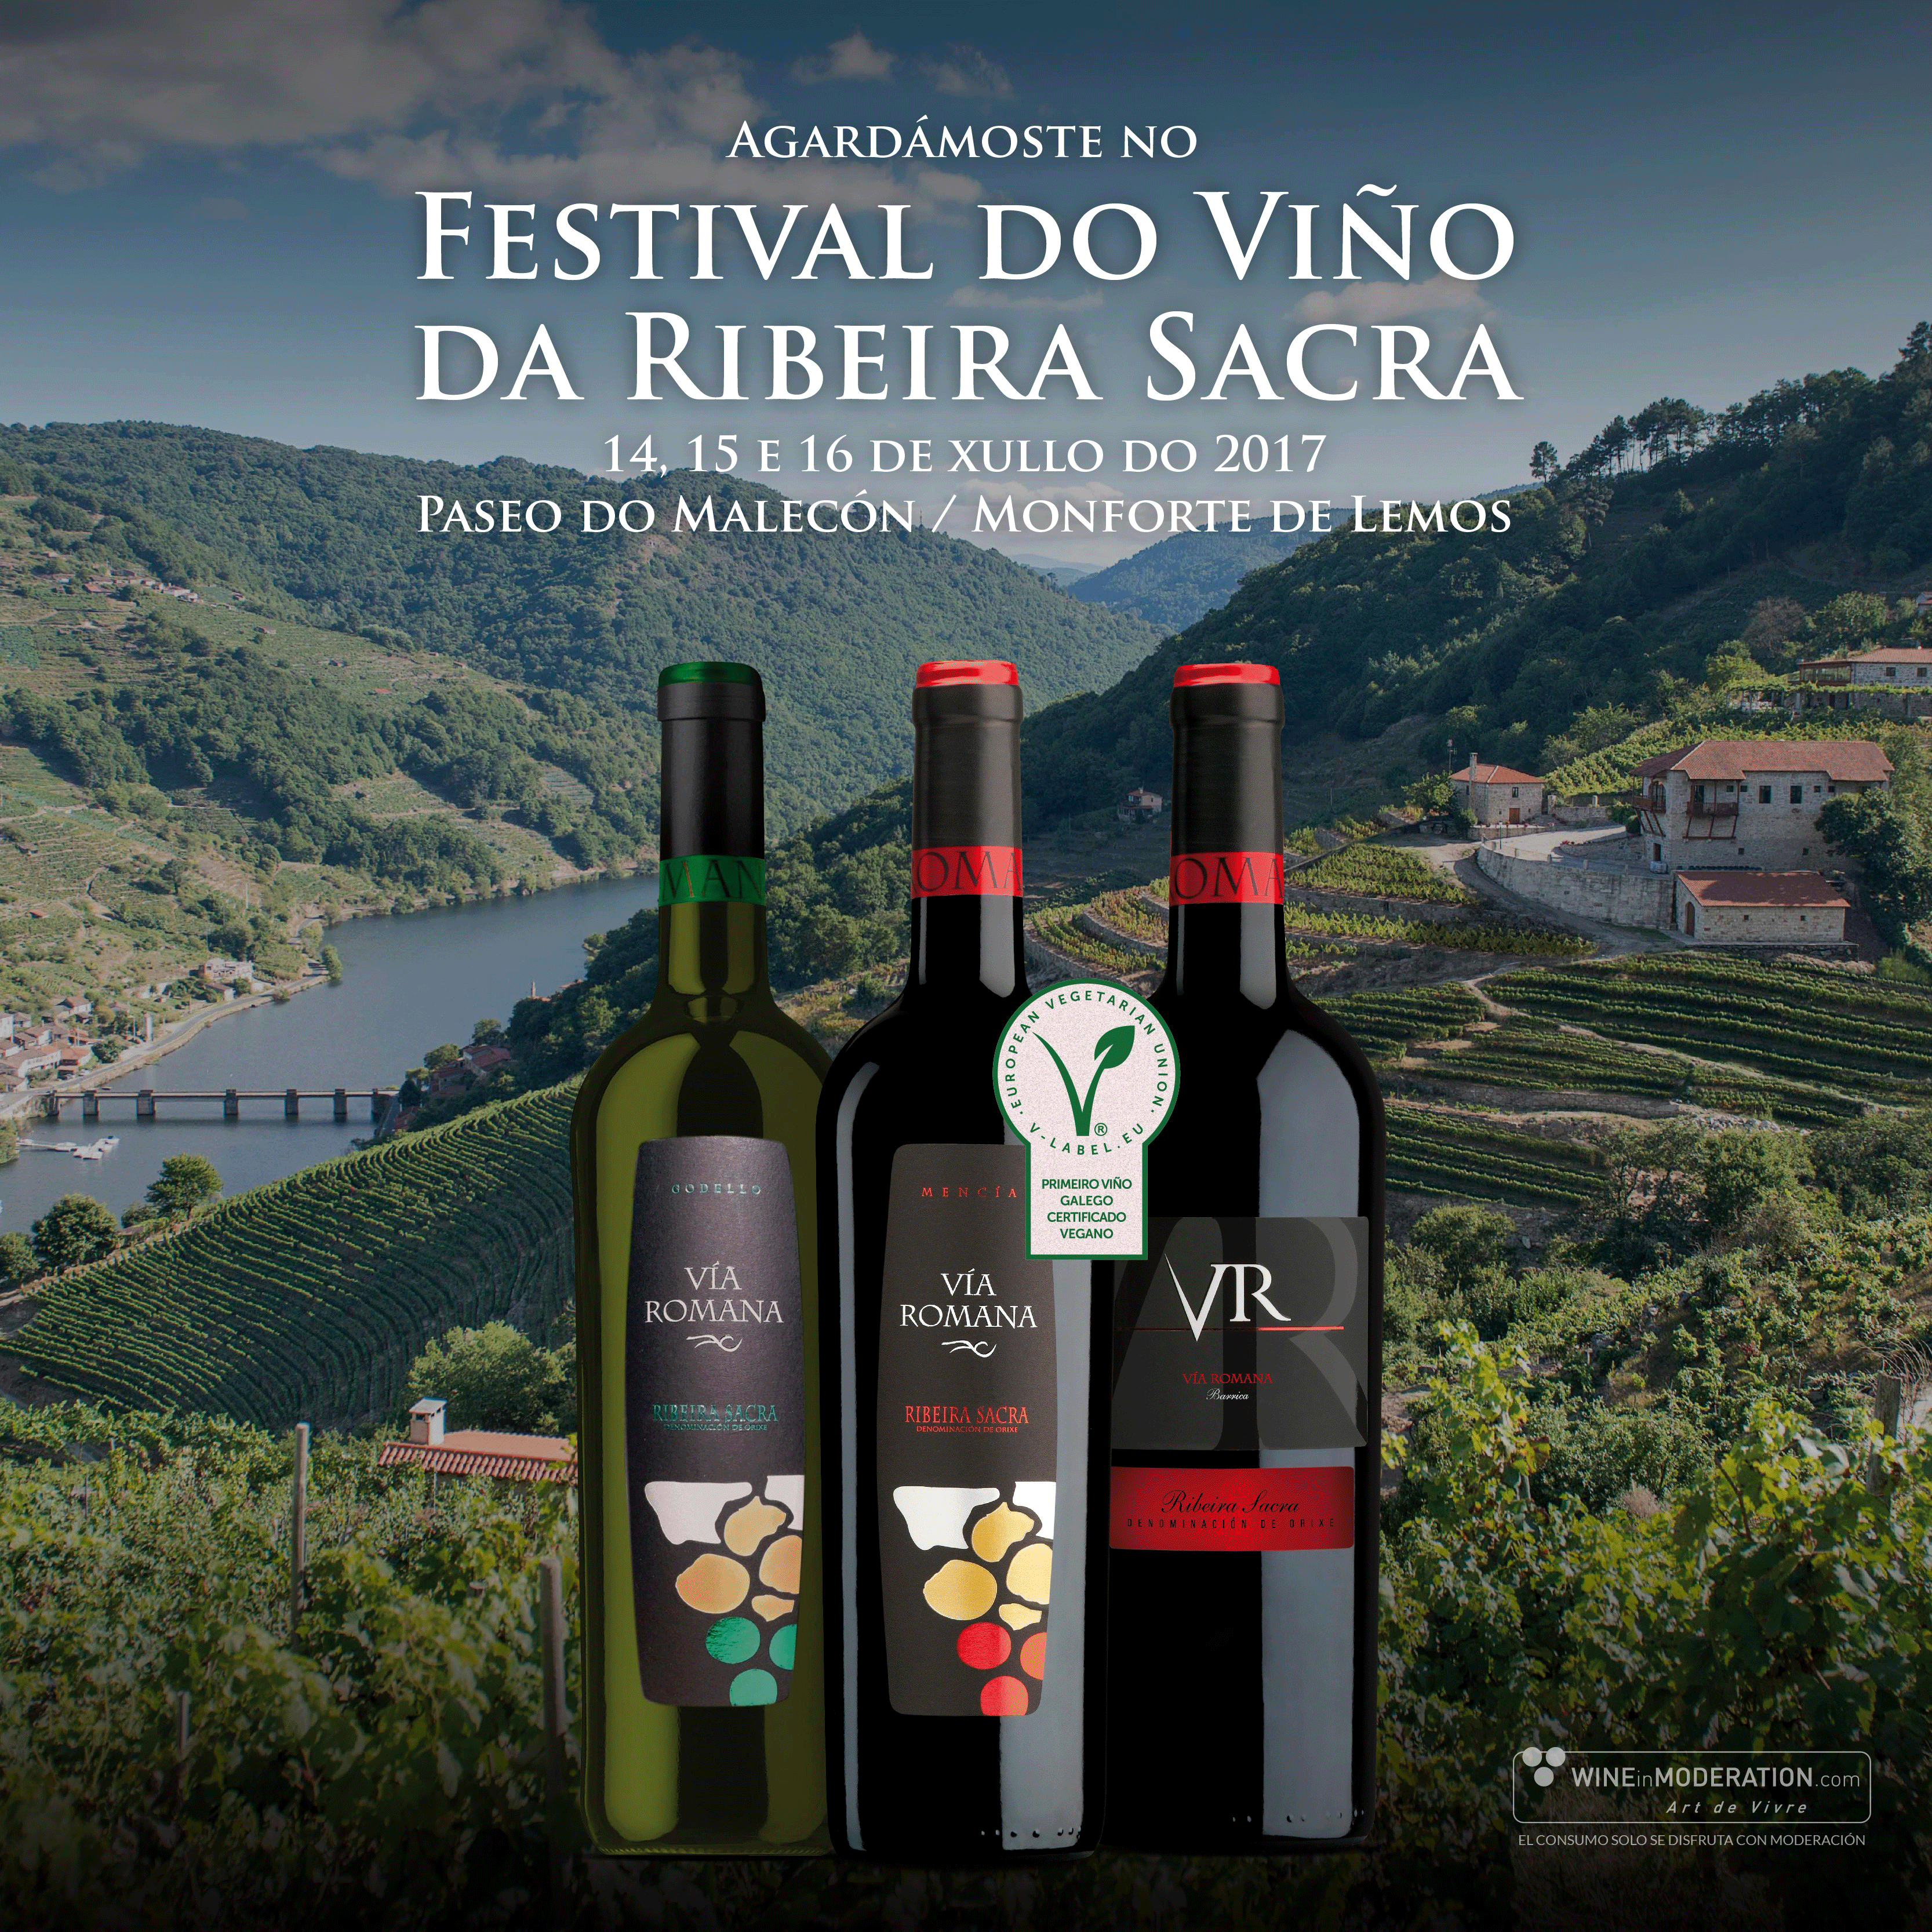 Enjoy the “Festival do Viño da Ribeira Sacra” with Via Romana